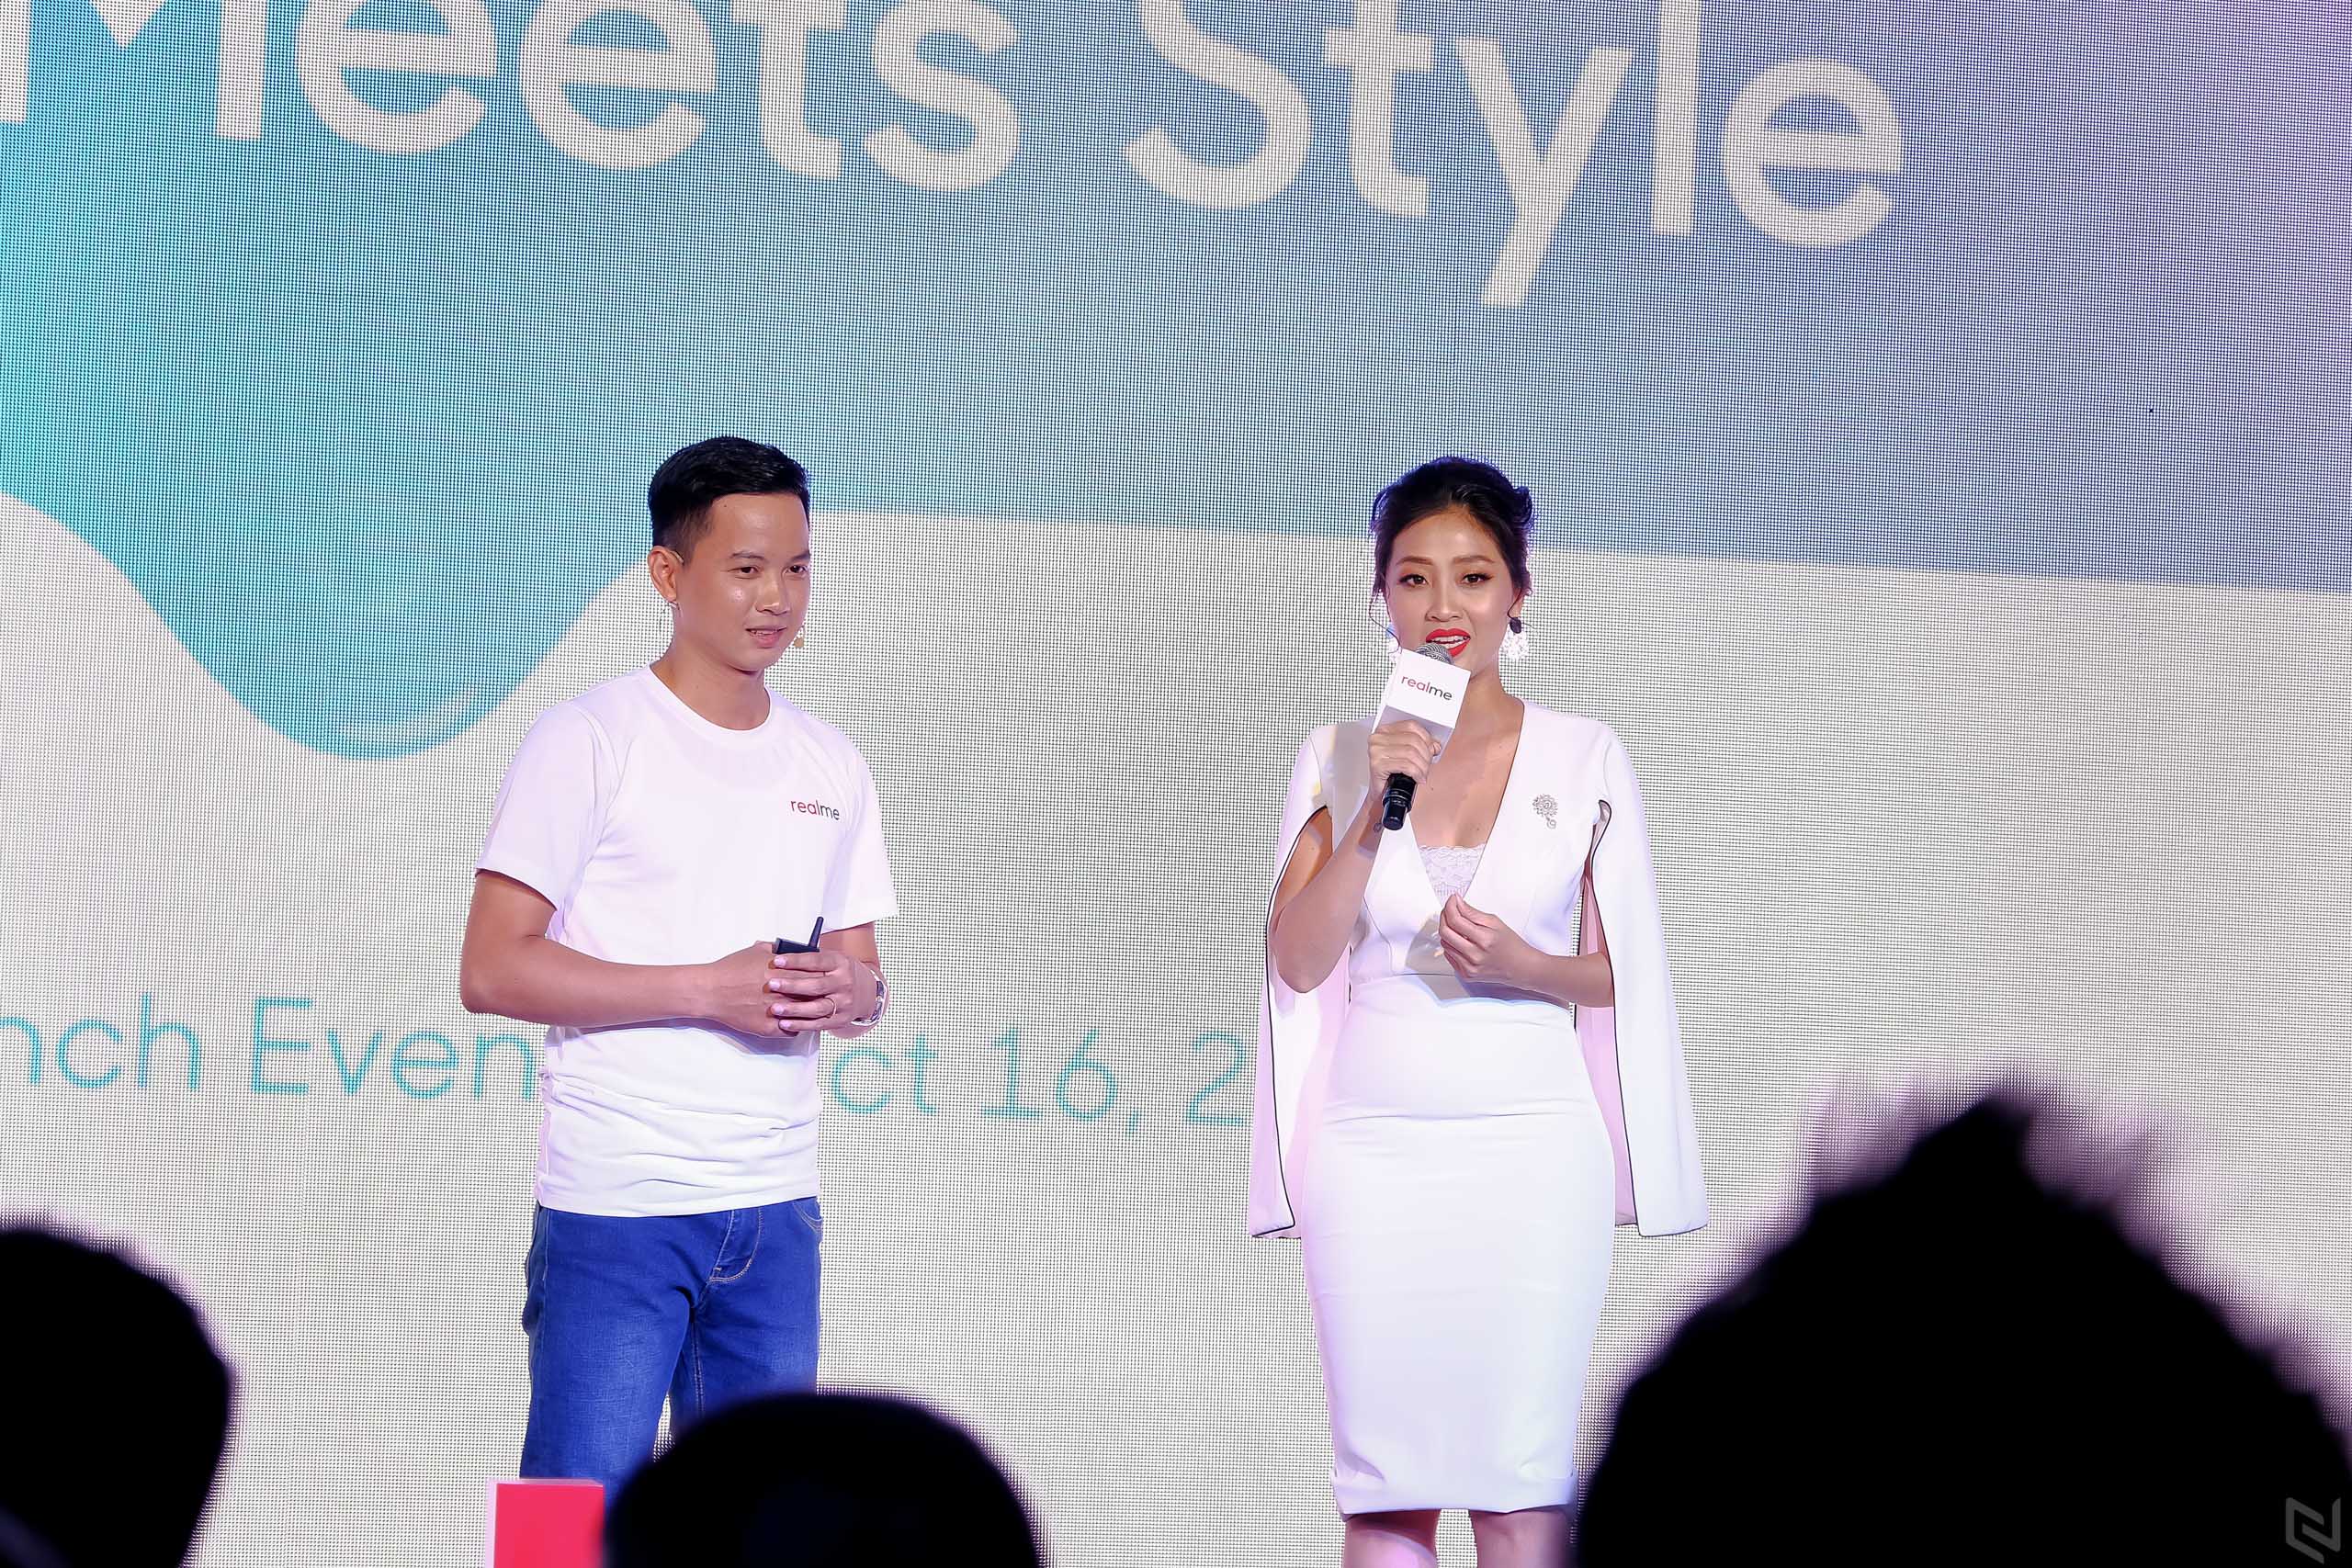 Realme Việt Nam chính thức ra mắt 3 dòng sản phẩm Realme C1, Realme 2 và Realme 2 Pro